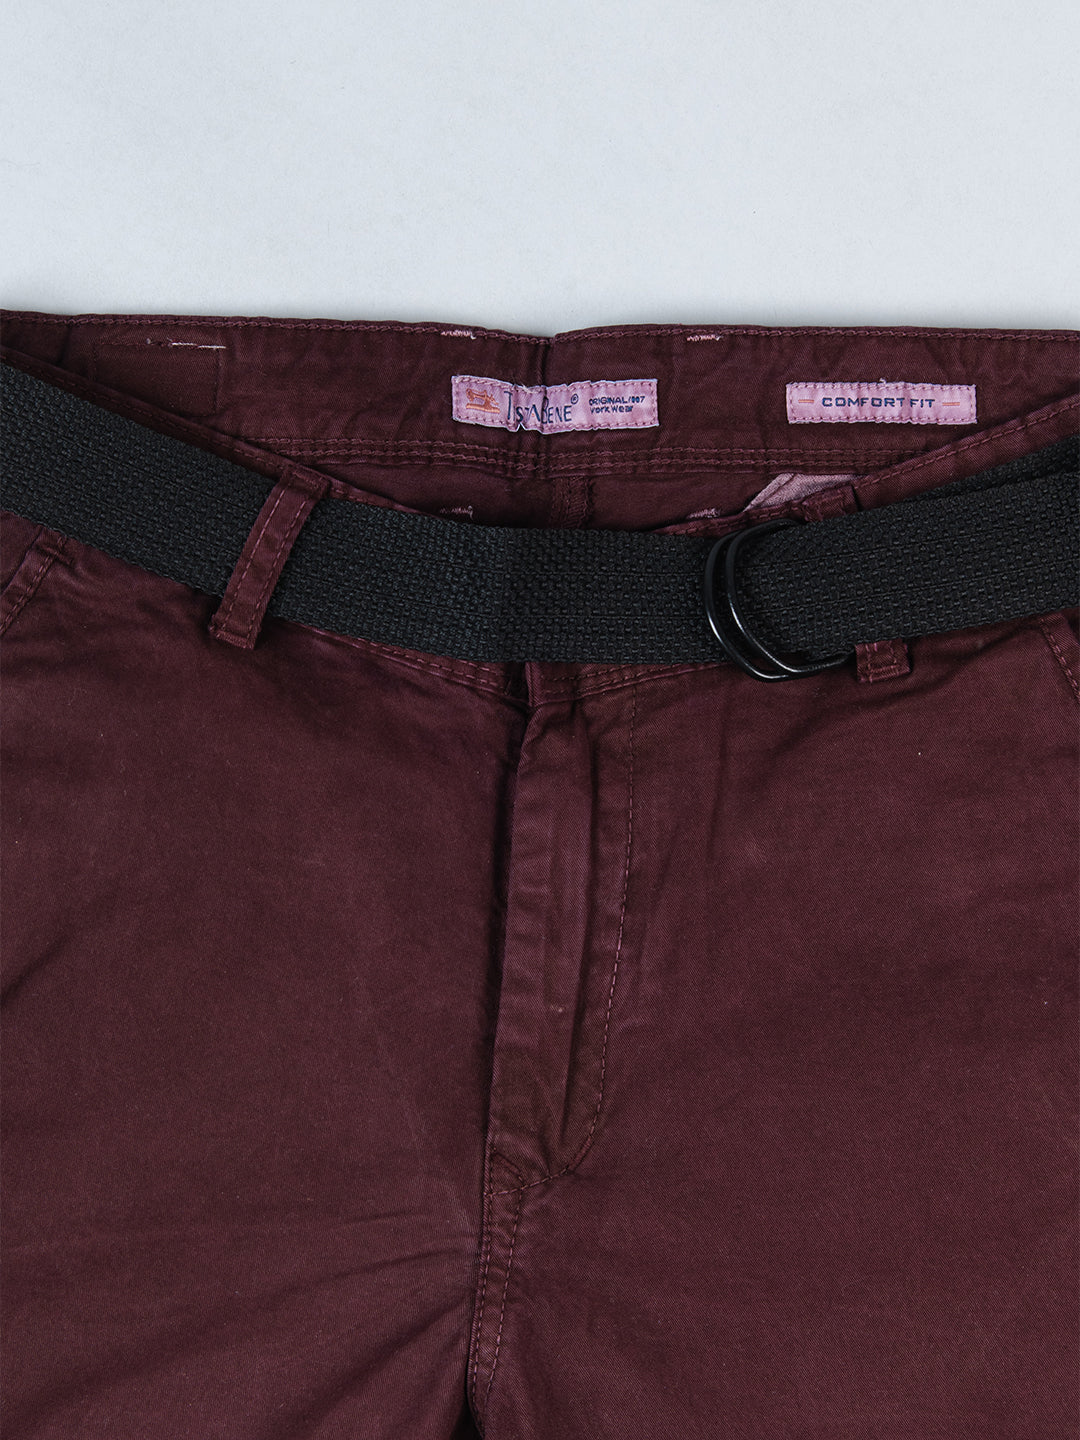 Ruby - Poppy pants on Designer Wardrobe